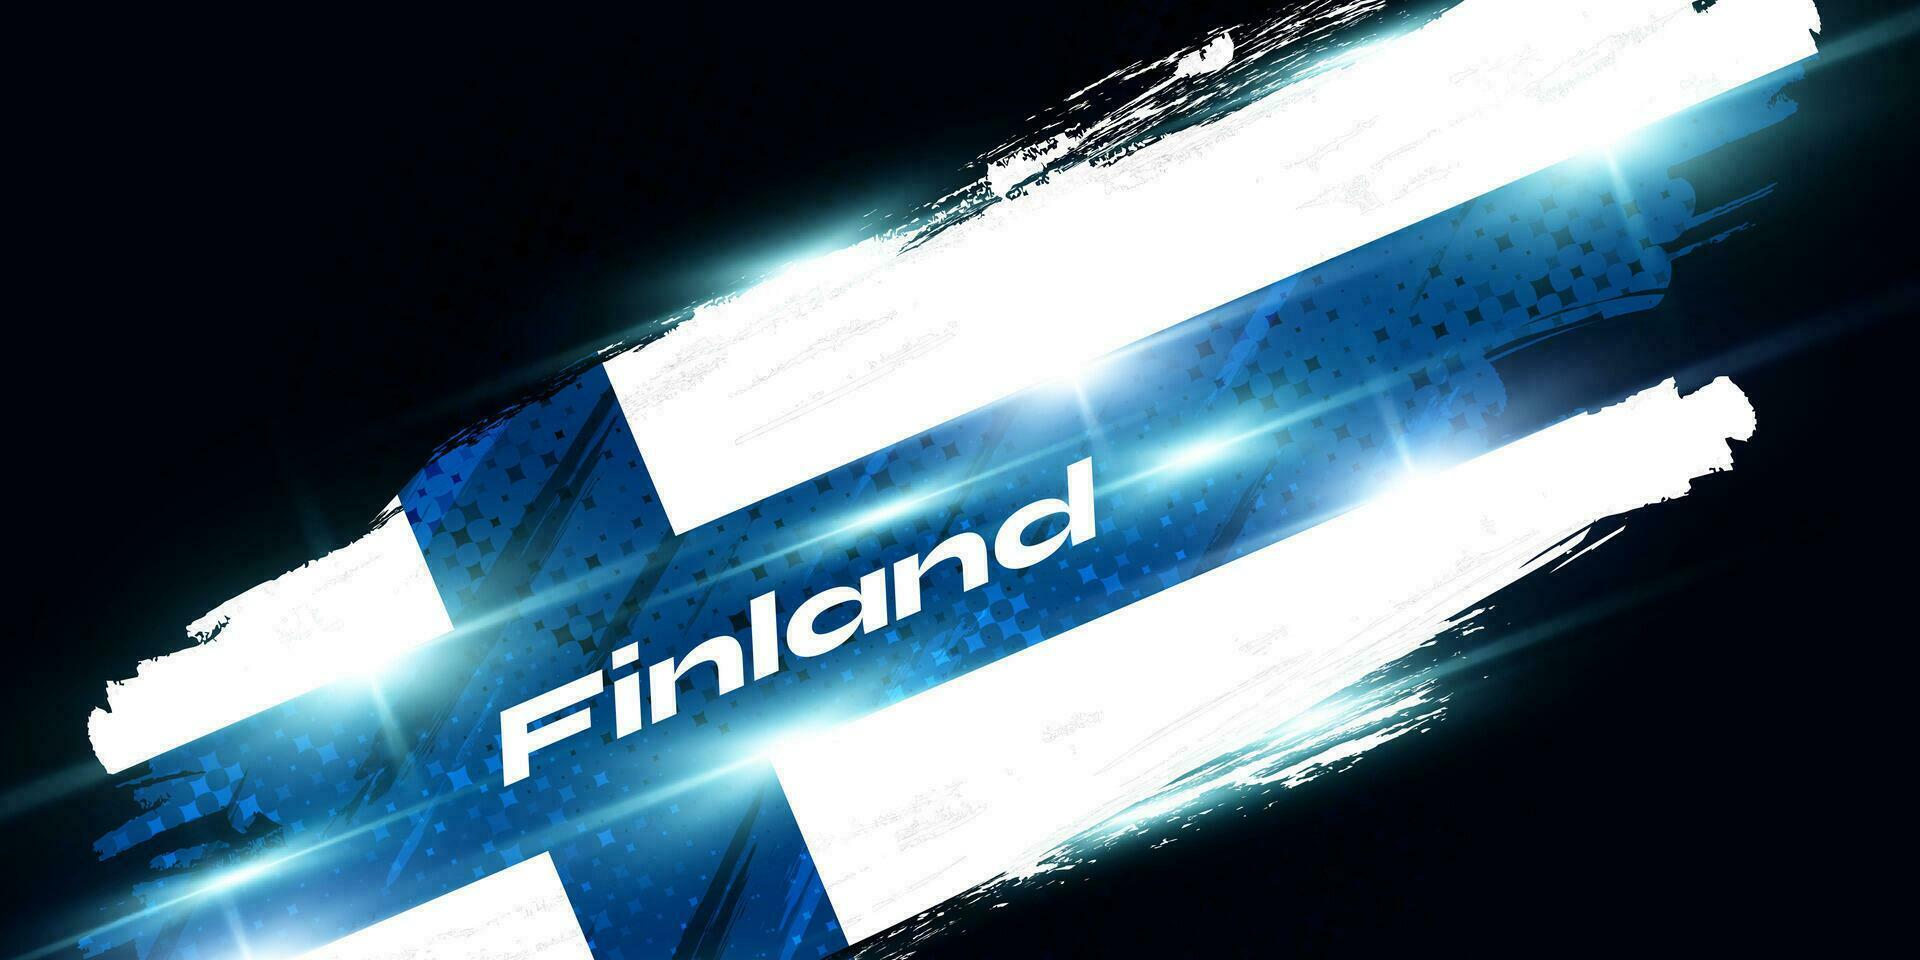 Finnland Flagge im Bürste Farbe Stil mit glühend und Halbton Wirkung. National Finnland Flagge. finnisch Flagge Symbol vektor